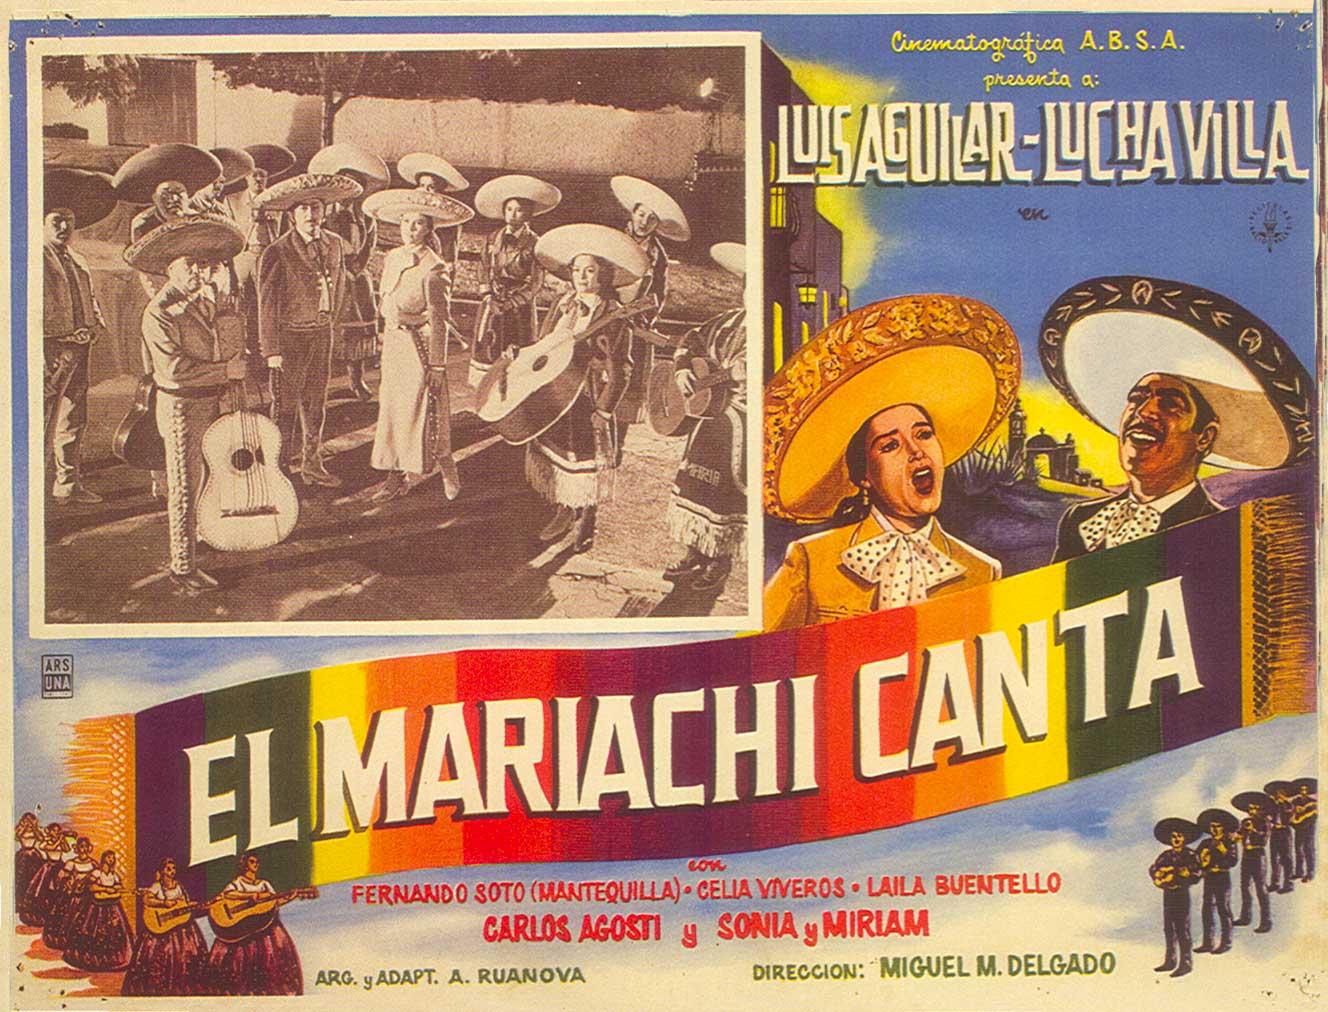 El mariachi canta (1963)